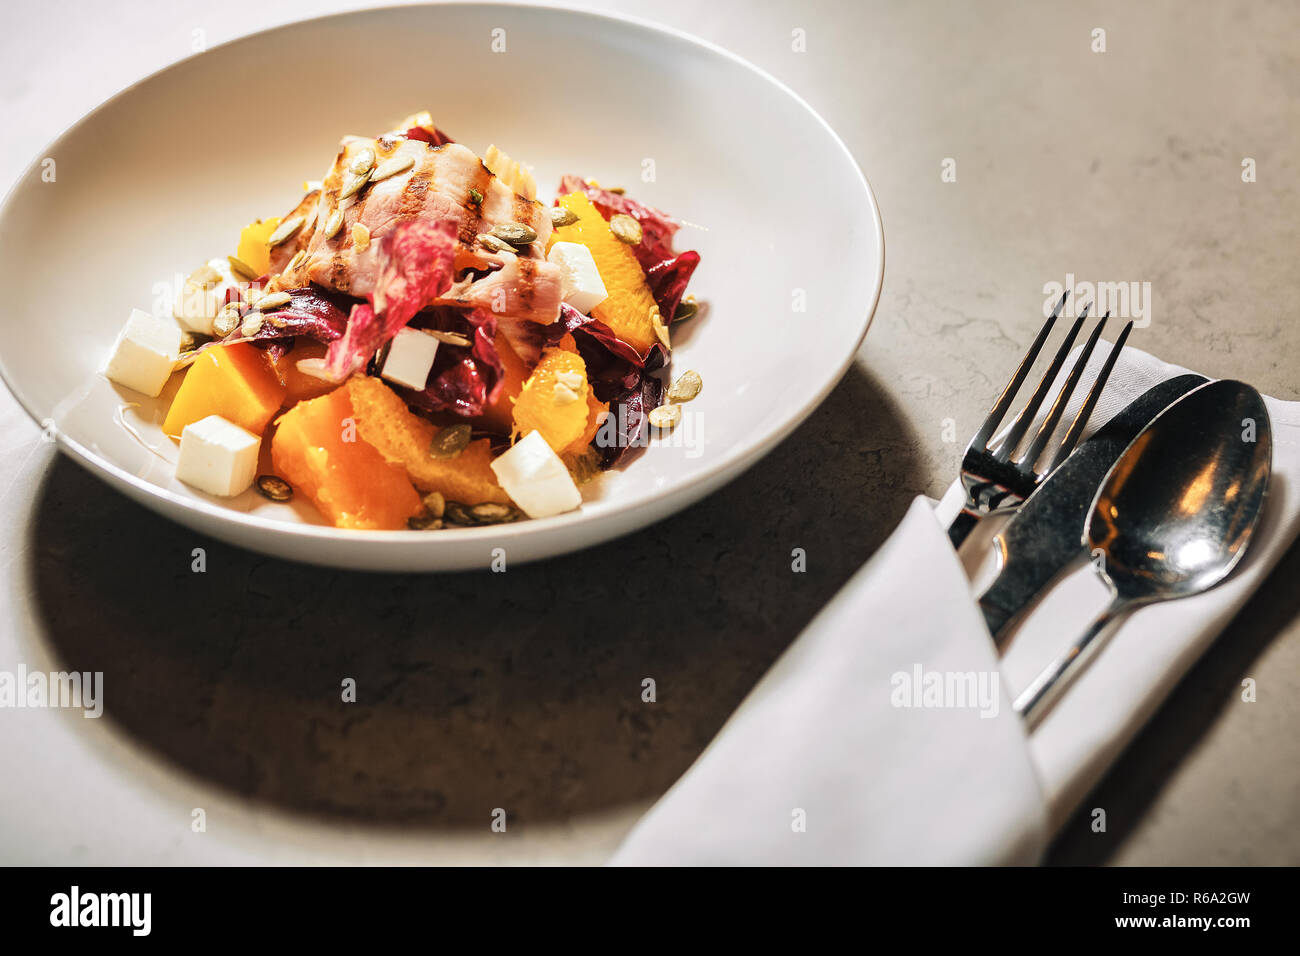 Salade savoureuse cuits selon la nouvelle recette debout sur le tableau Banque D'Images